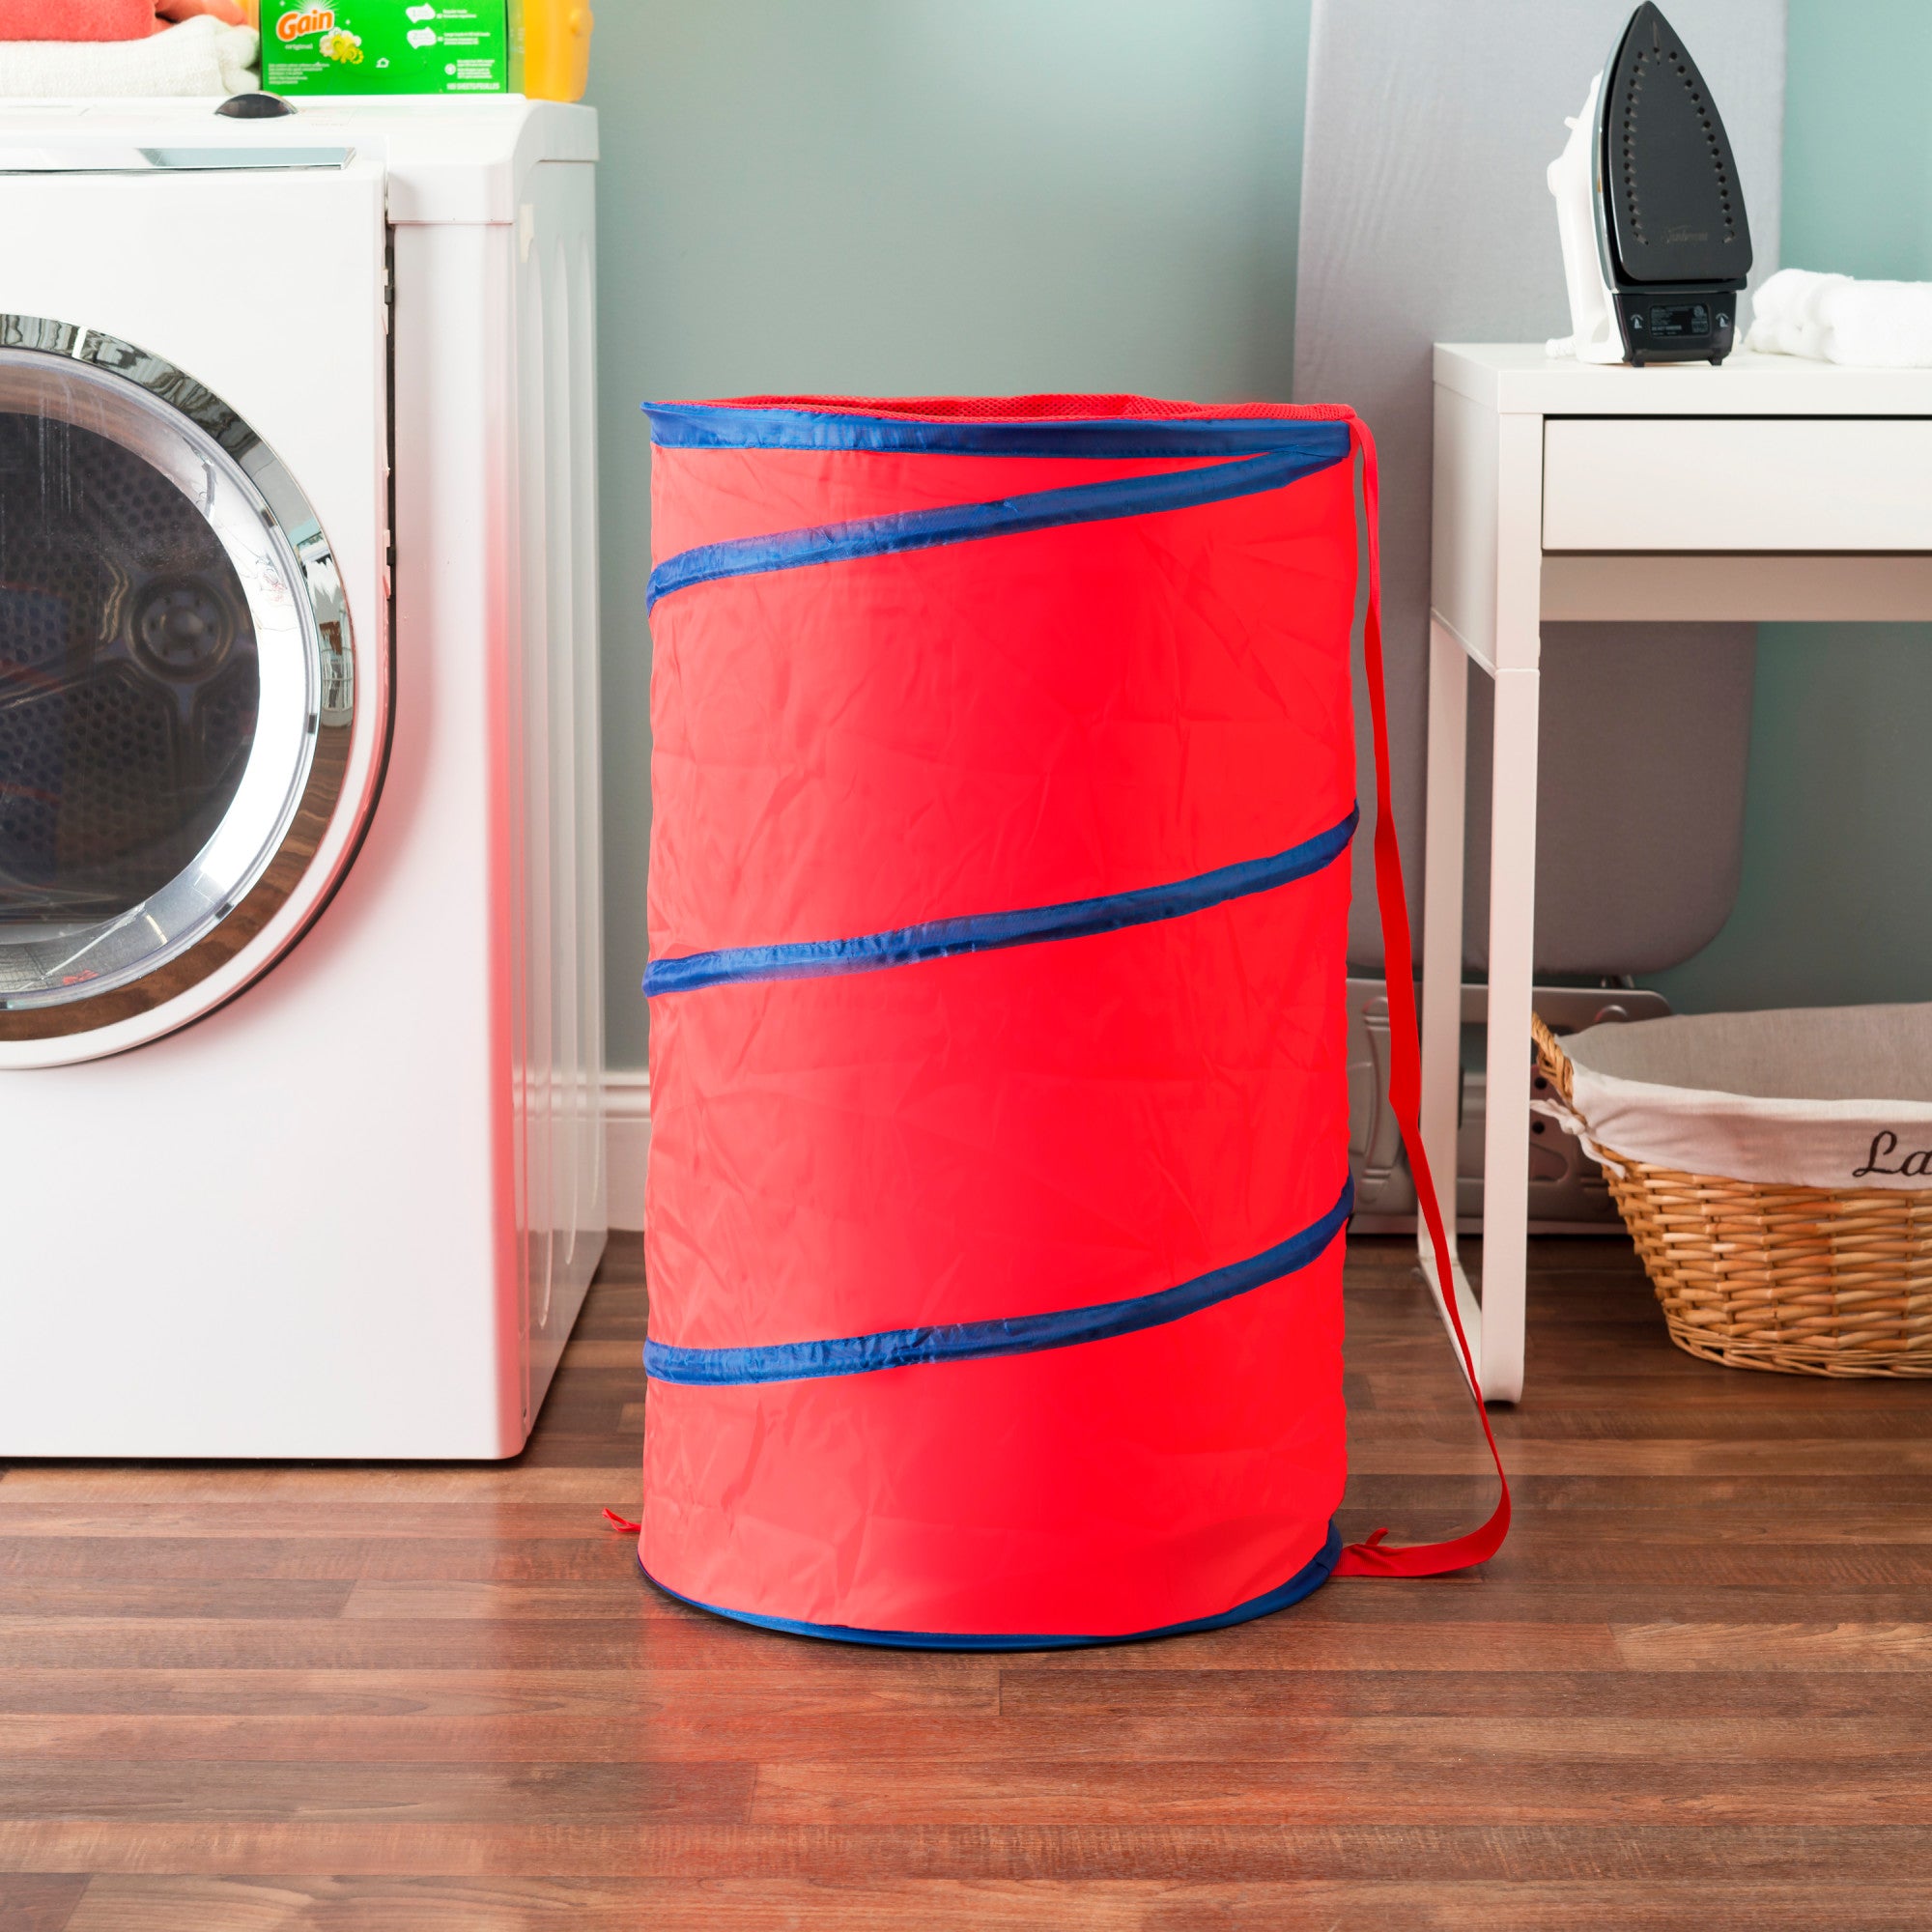 Home Basics Barrel Laundry Hamper - Assorted Colors